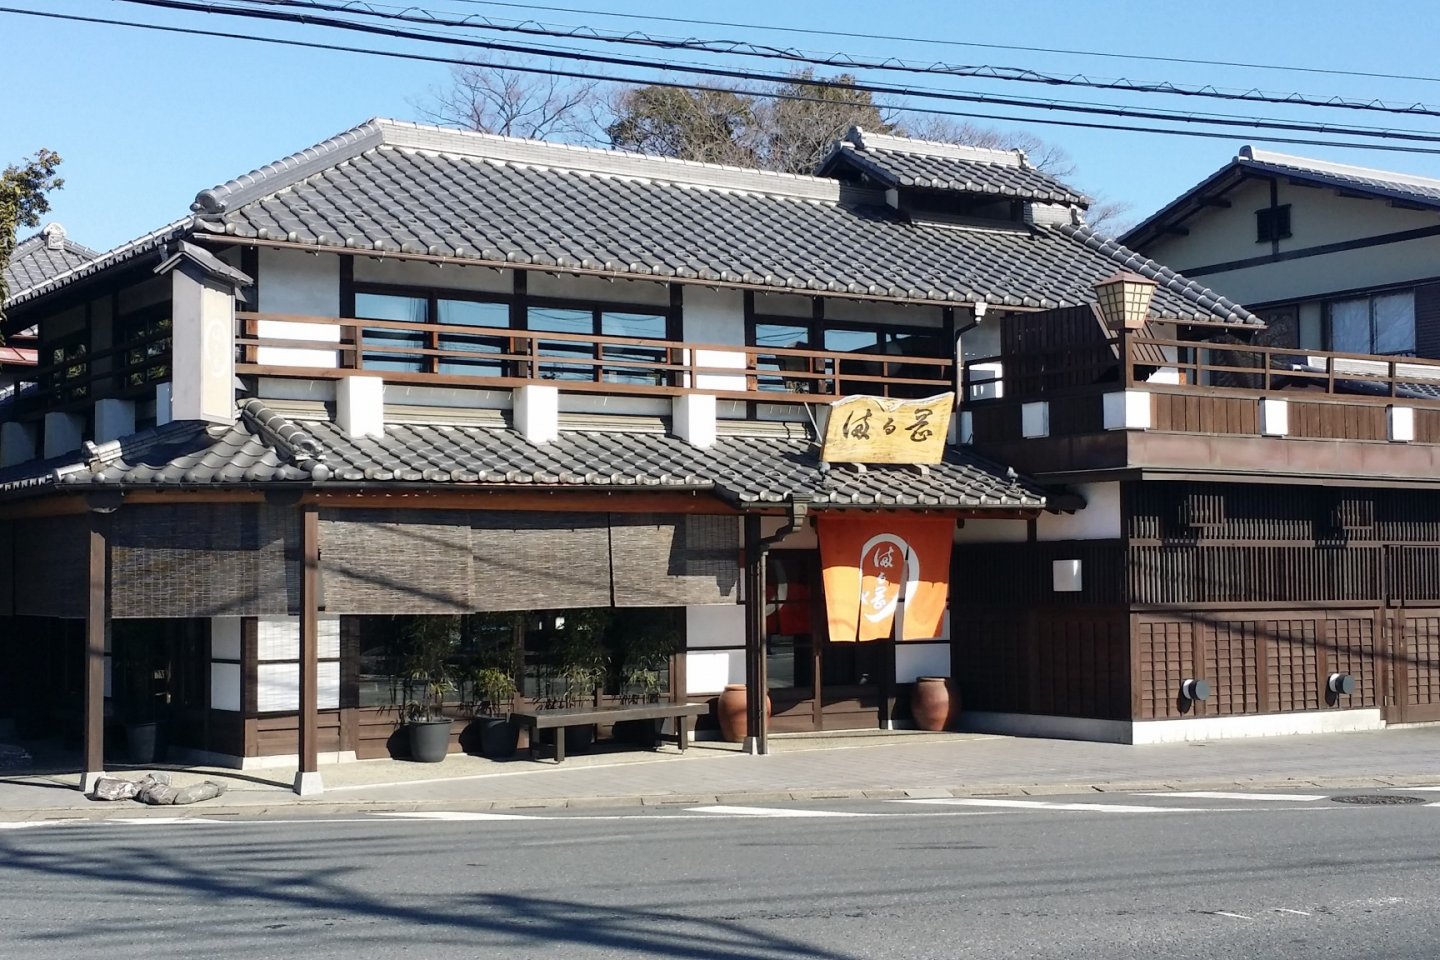 趣のある日本家屋の佇まいで、お客様をお迎えする。建物西側には手入れの行き届いた樫の木が並ぶ。